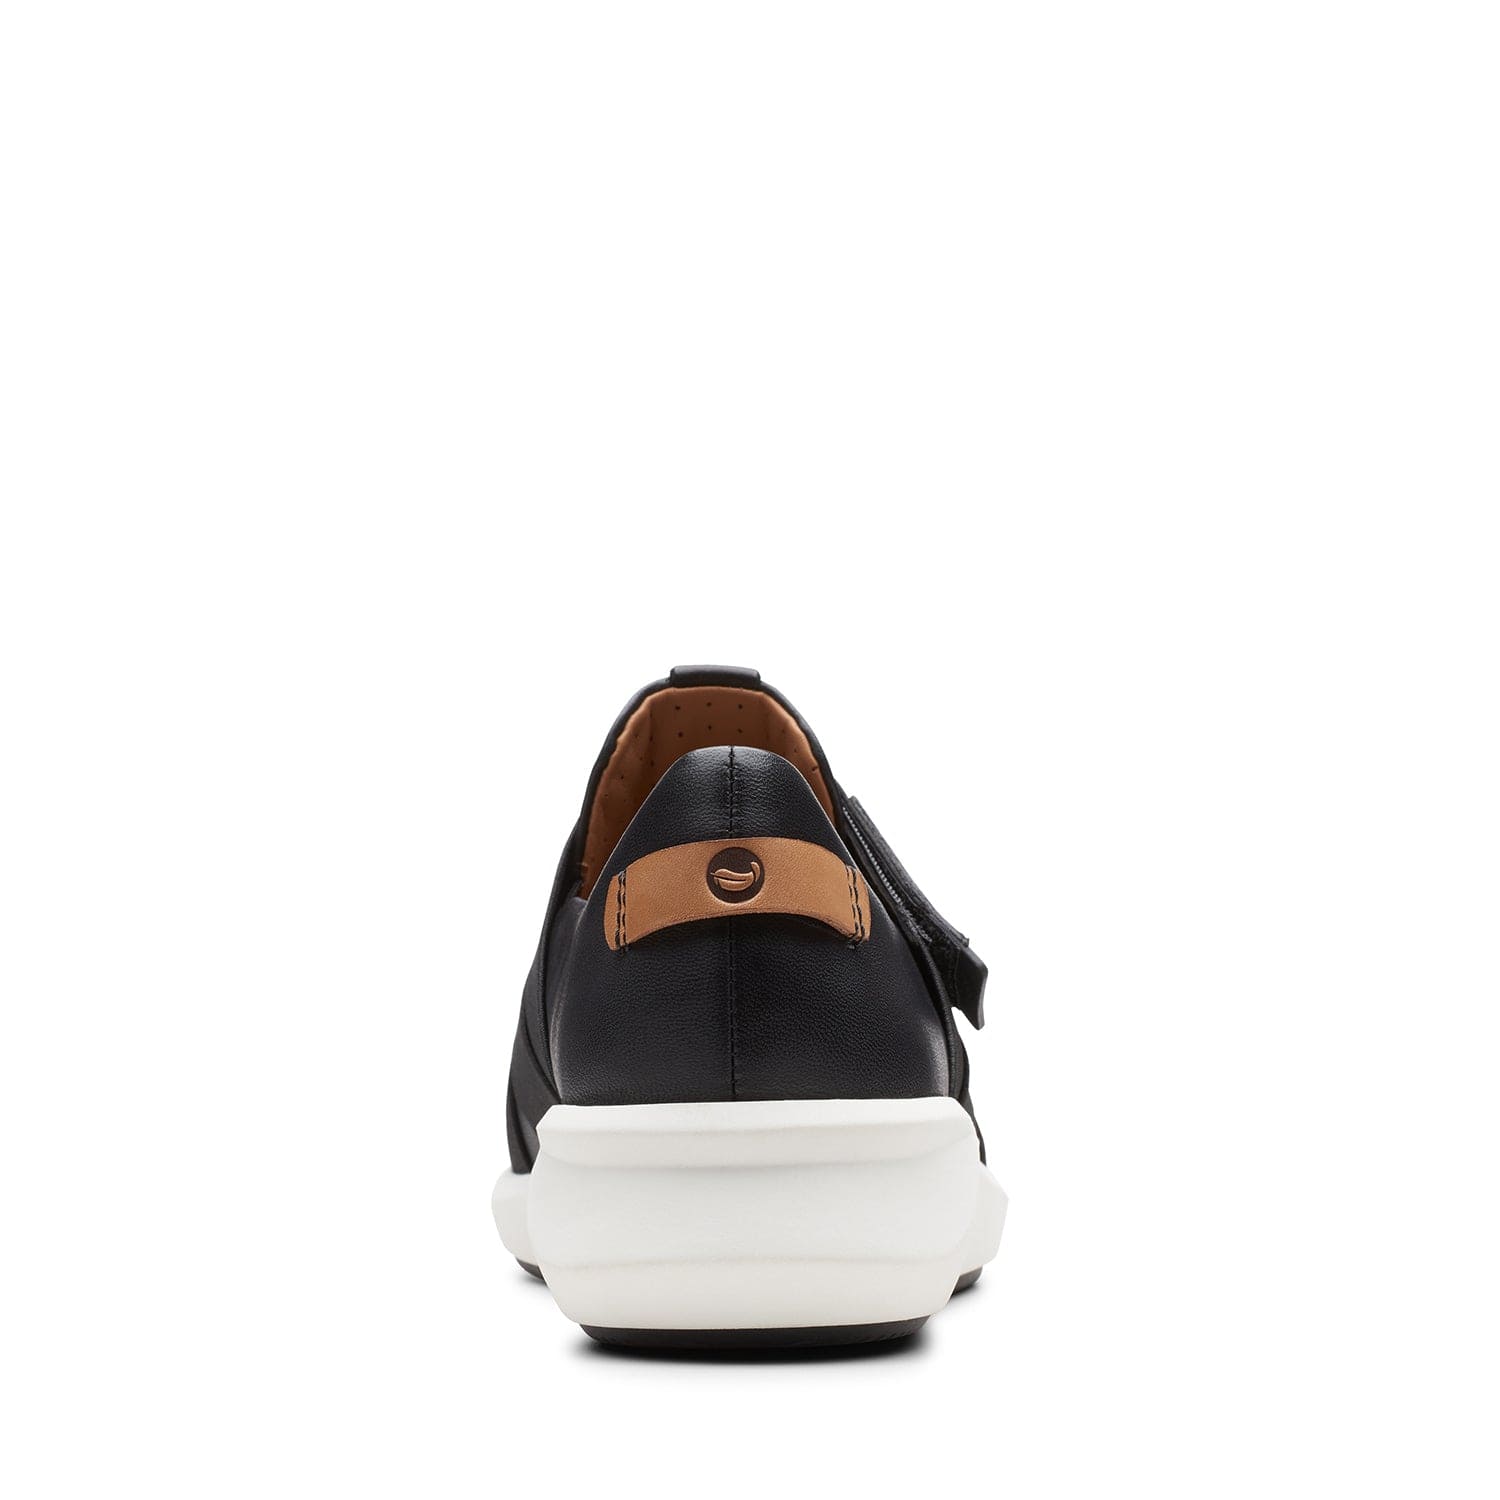 Clarks Un Rio Strap - Shoes - Black Leather - 261456145 - E Width (Wide Fit)